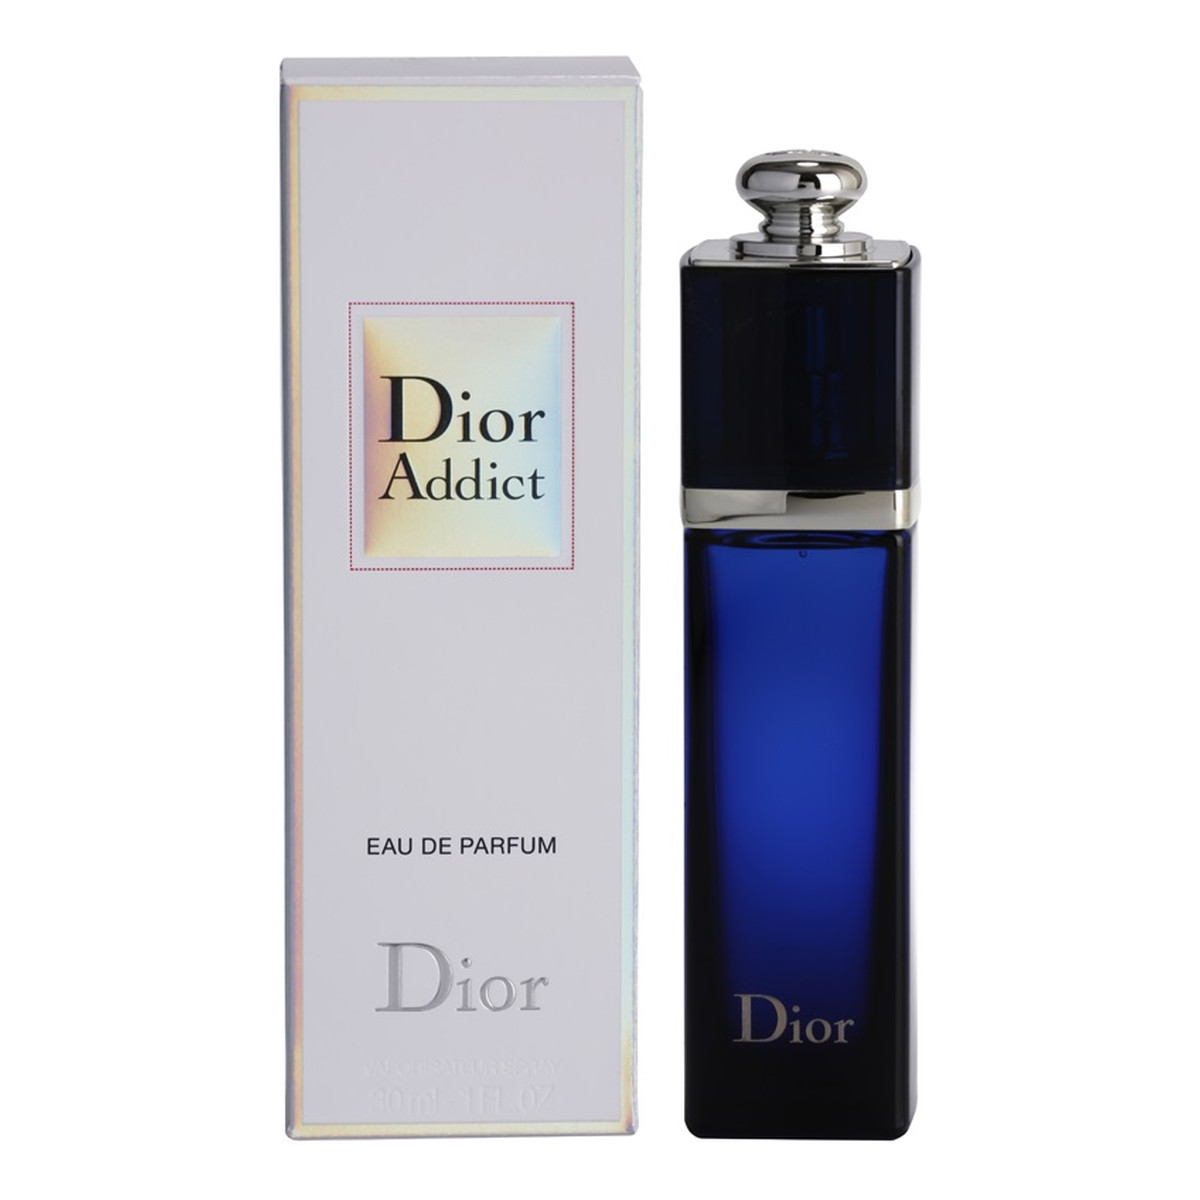 Dior Addict woda perfumowana dla kobiet 30ml